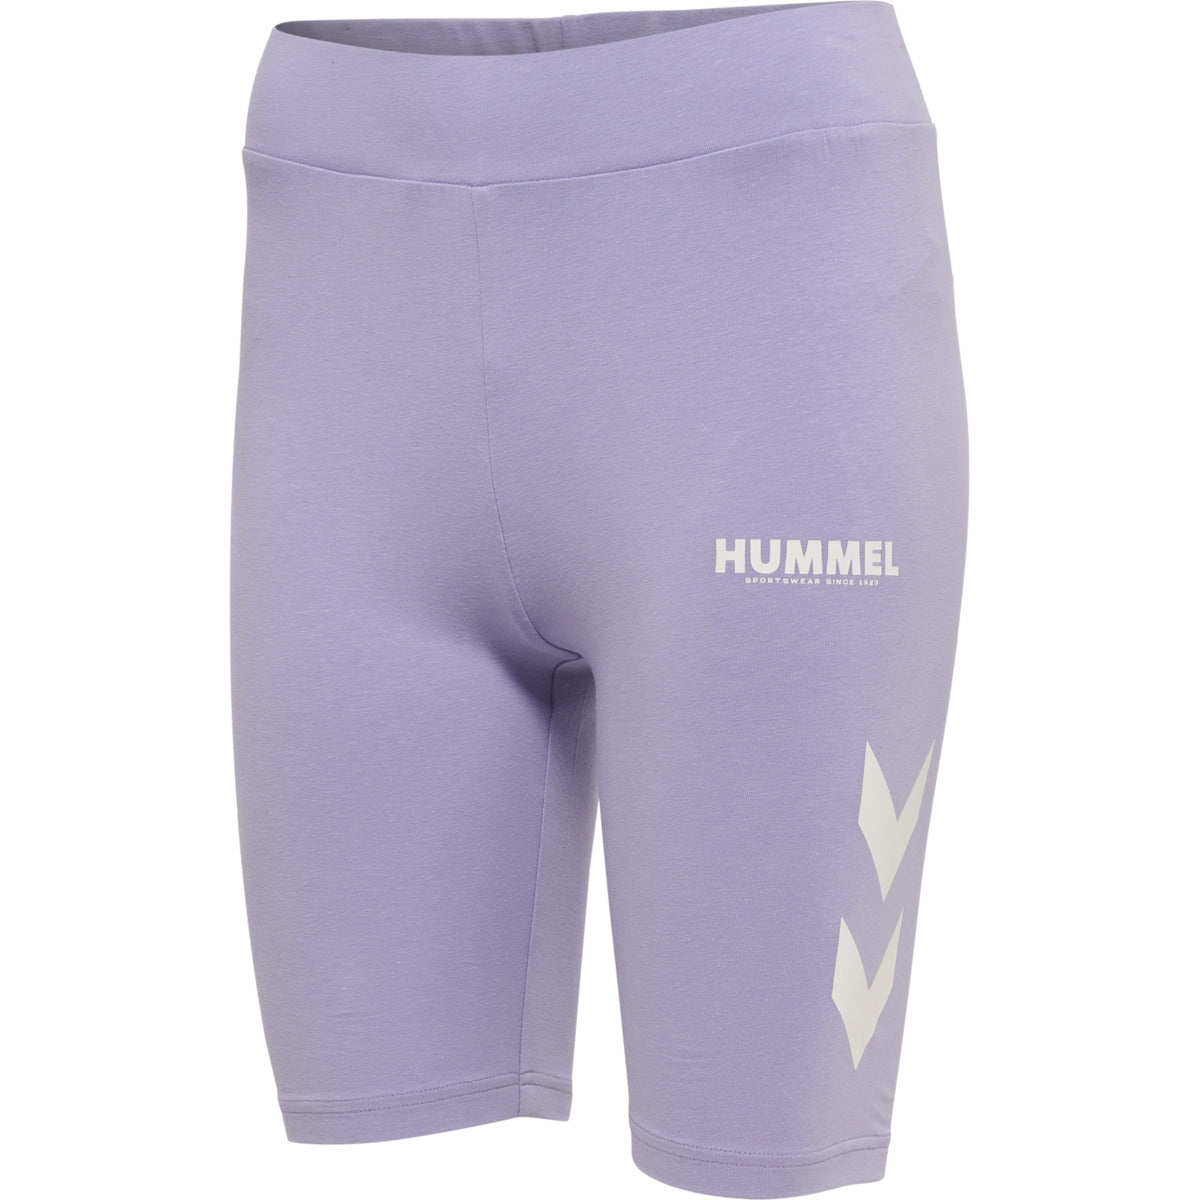 Billede af Hummel Wmn Legacy Tight Shorts - Pastel Lilac